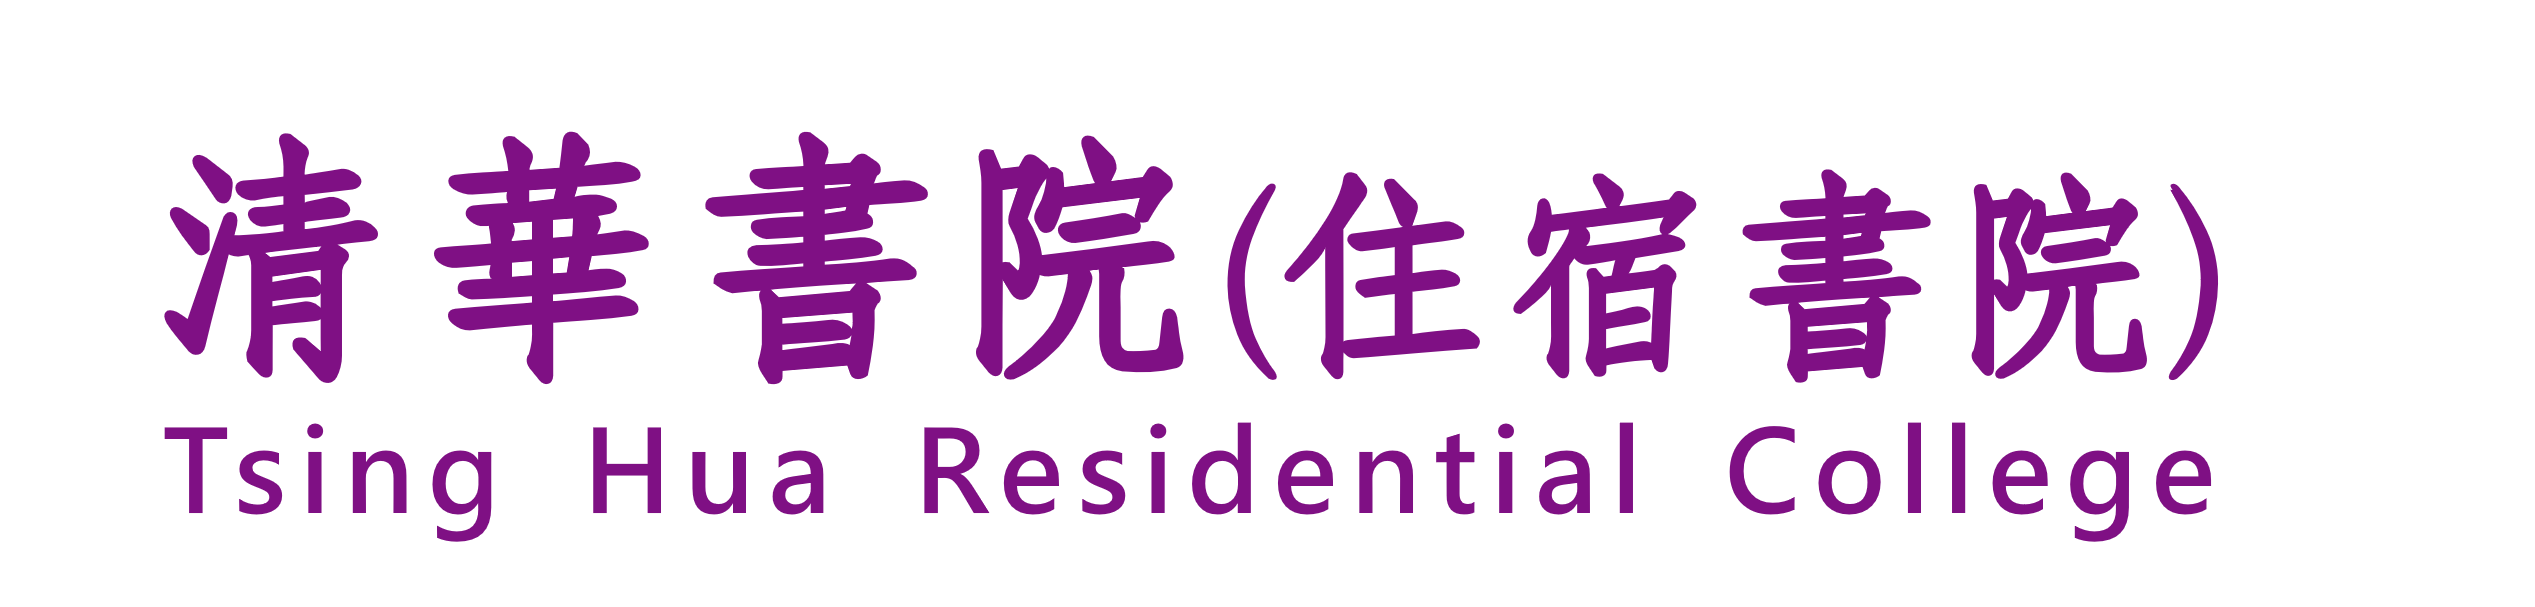 Tsing Hua Residential College